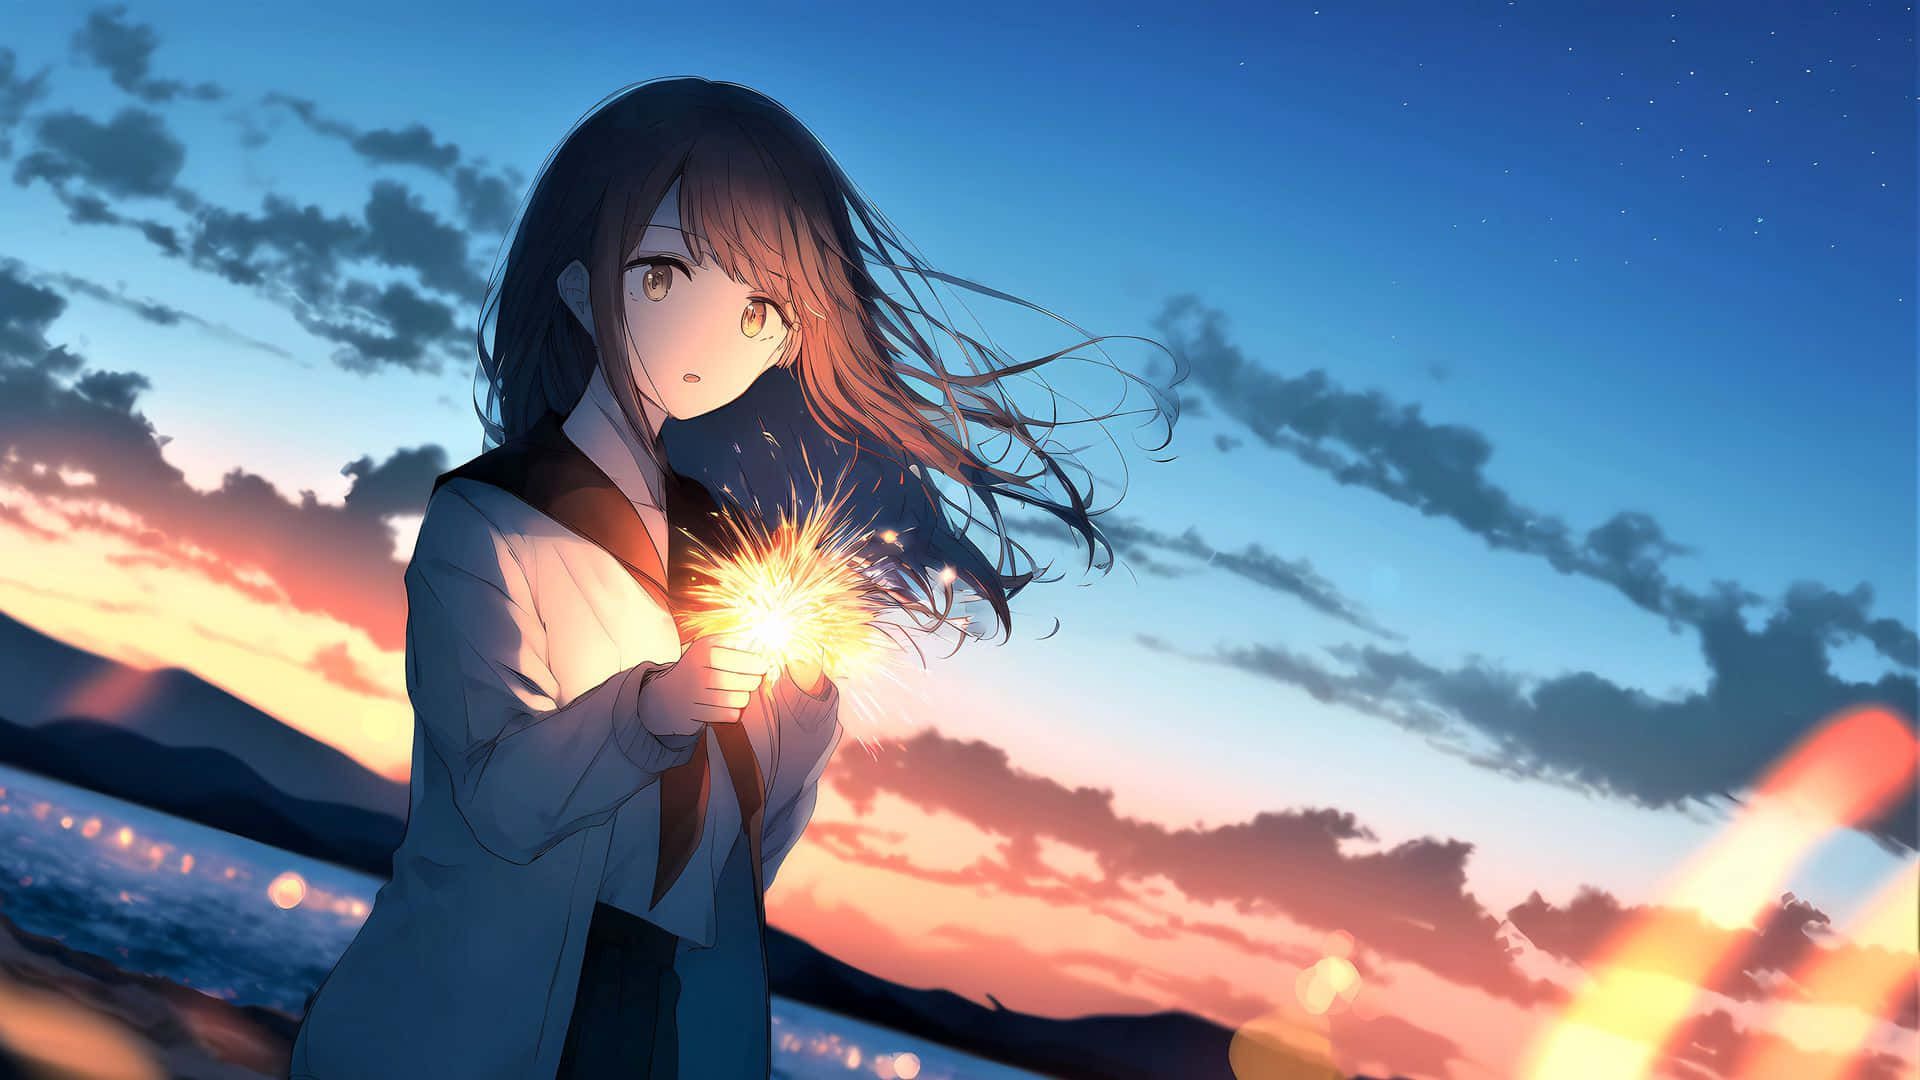 Anime baggrund med farverige stjerner